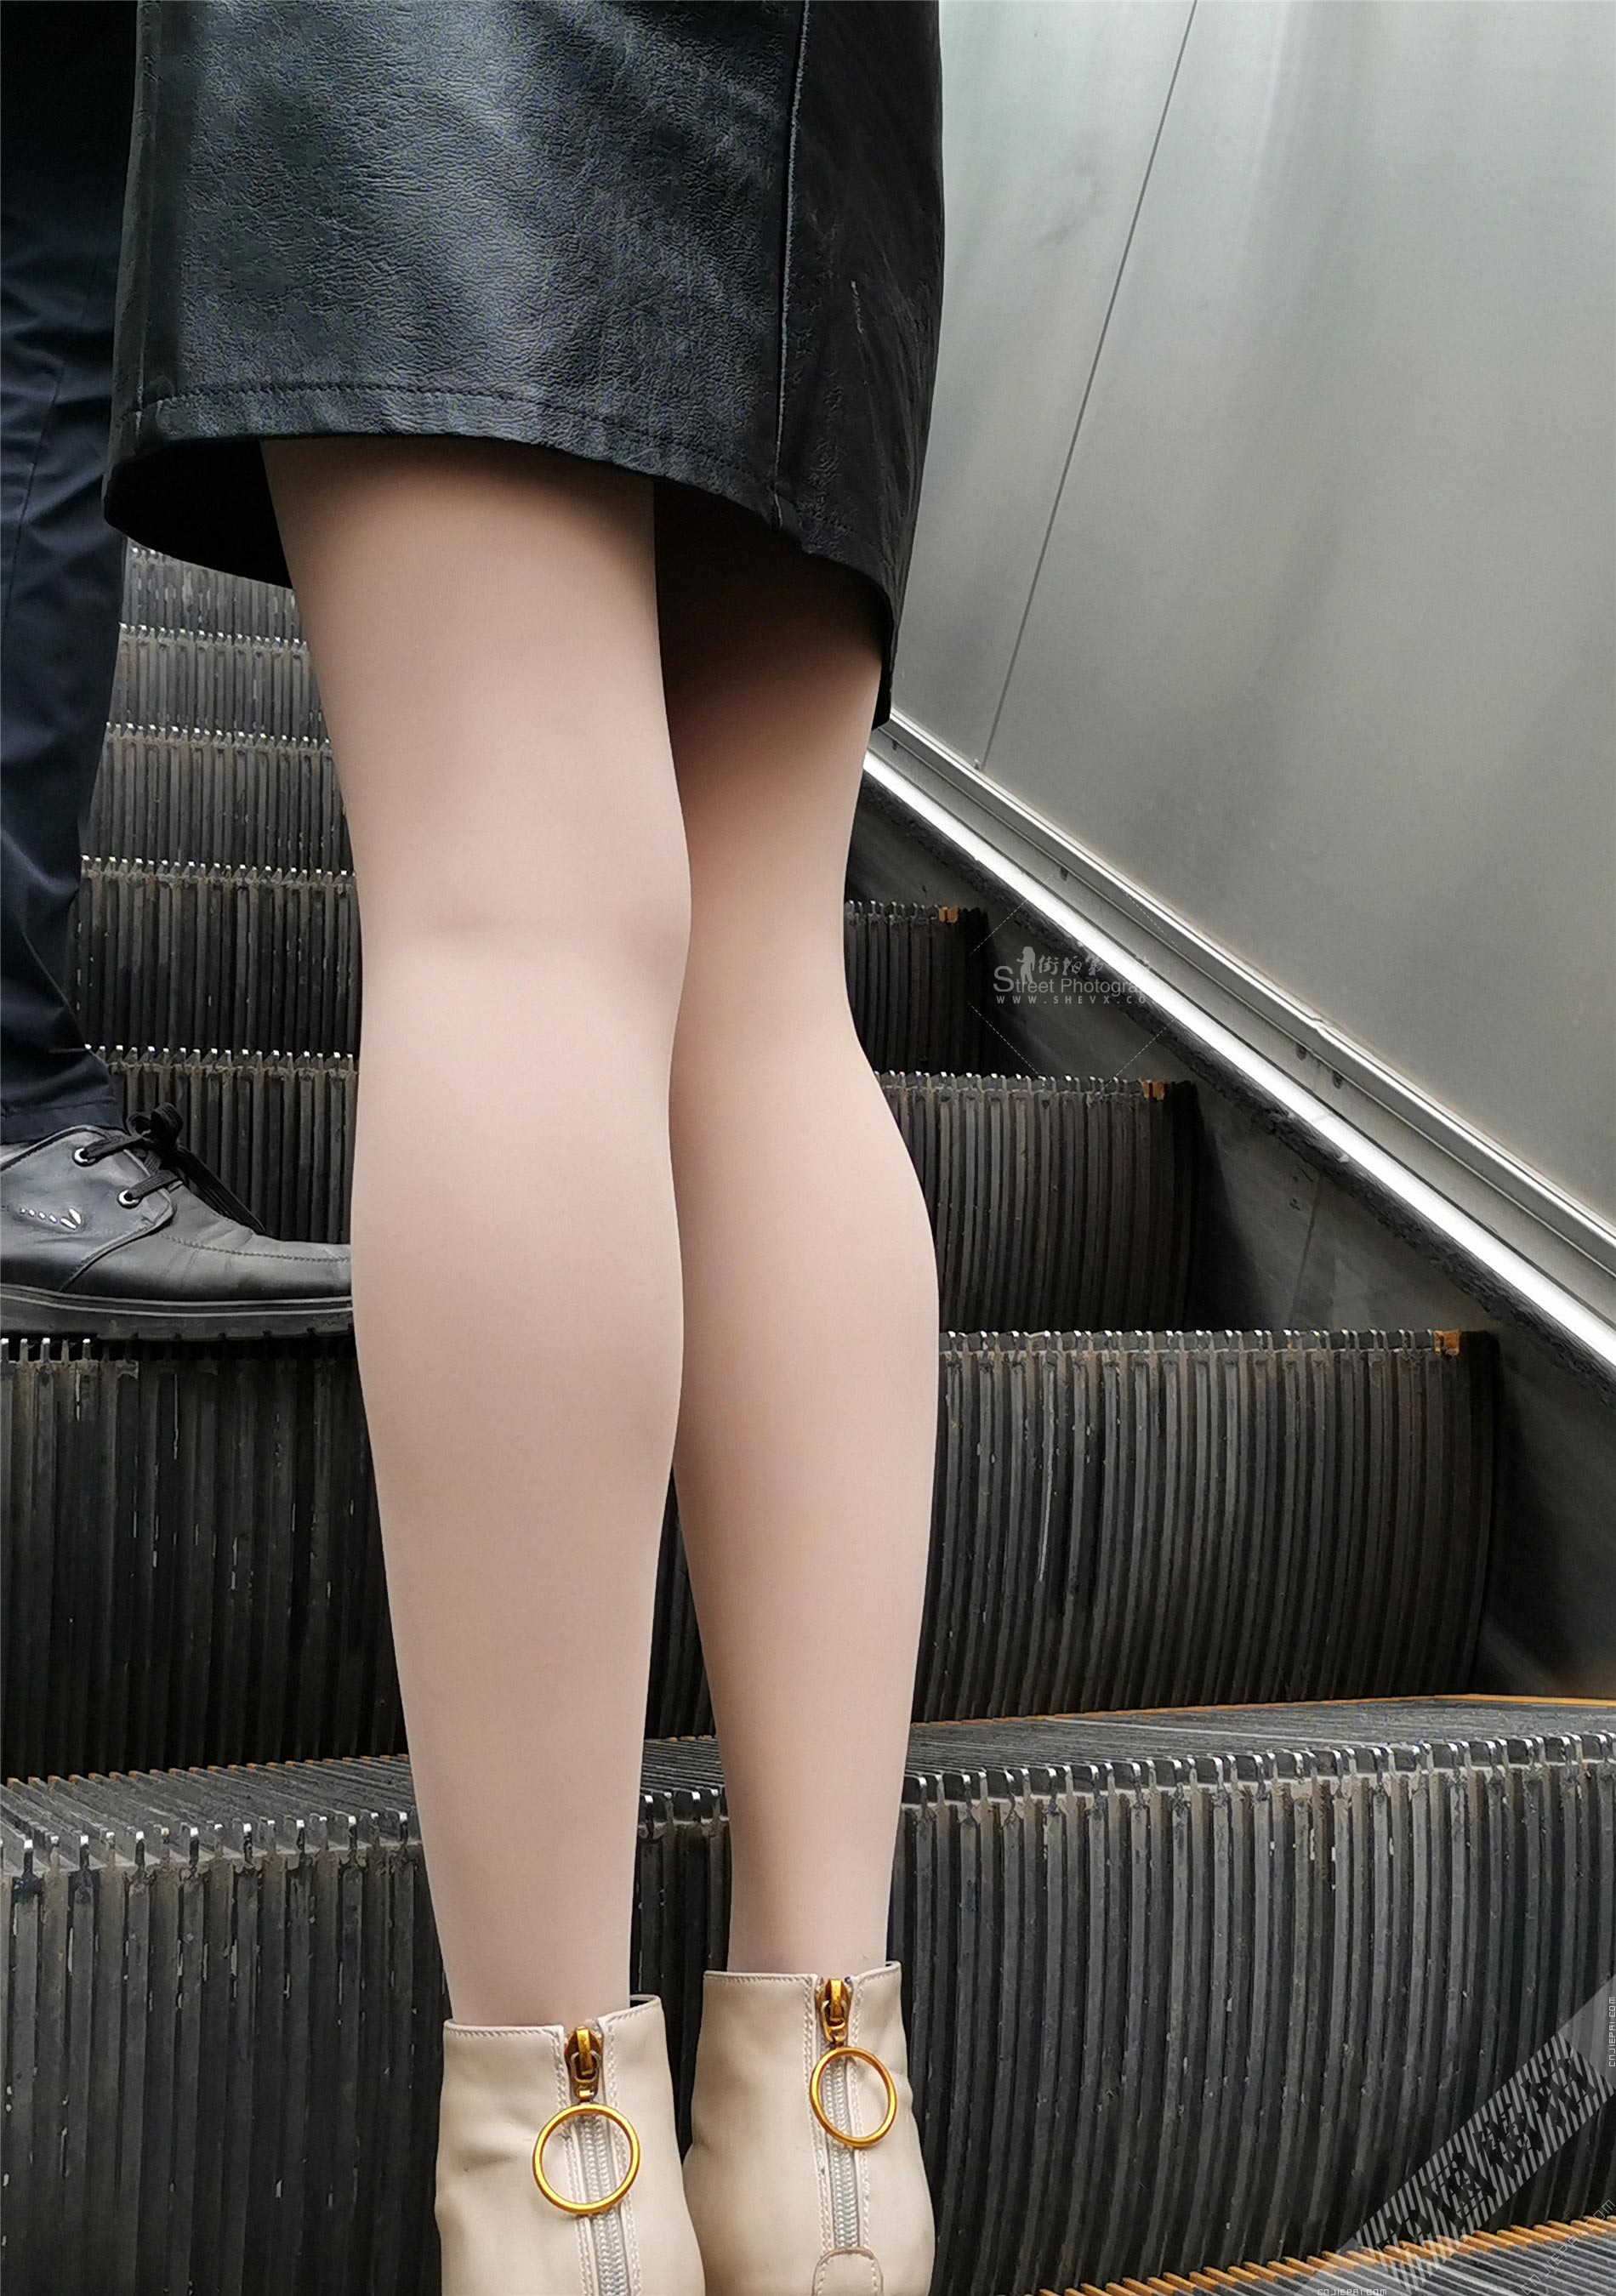 抓拍电梯上厚肉丝少妇光滑的双腿 图2